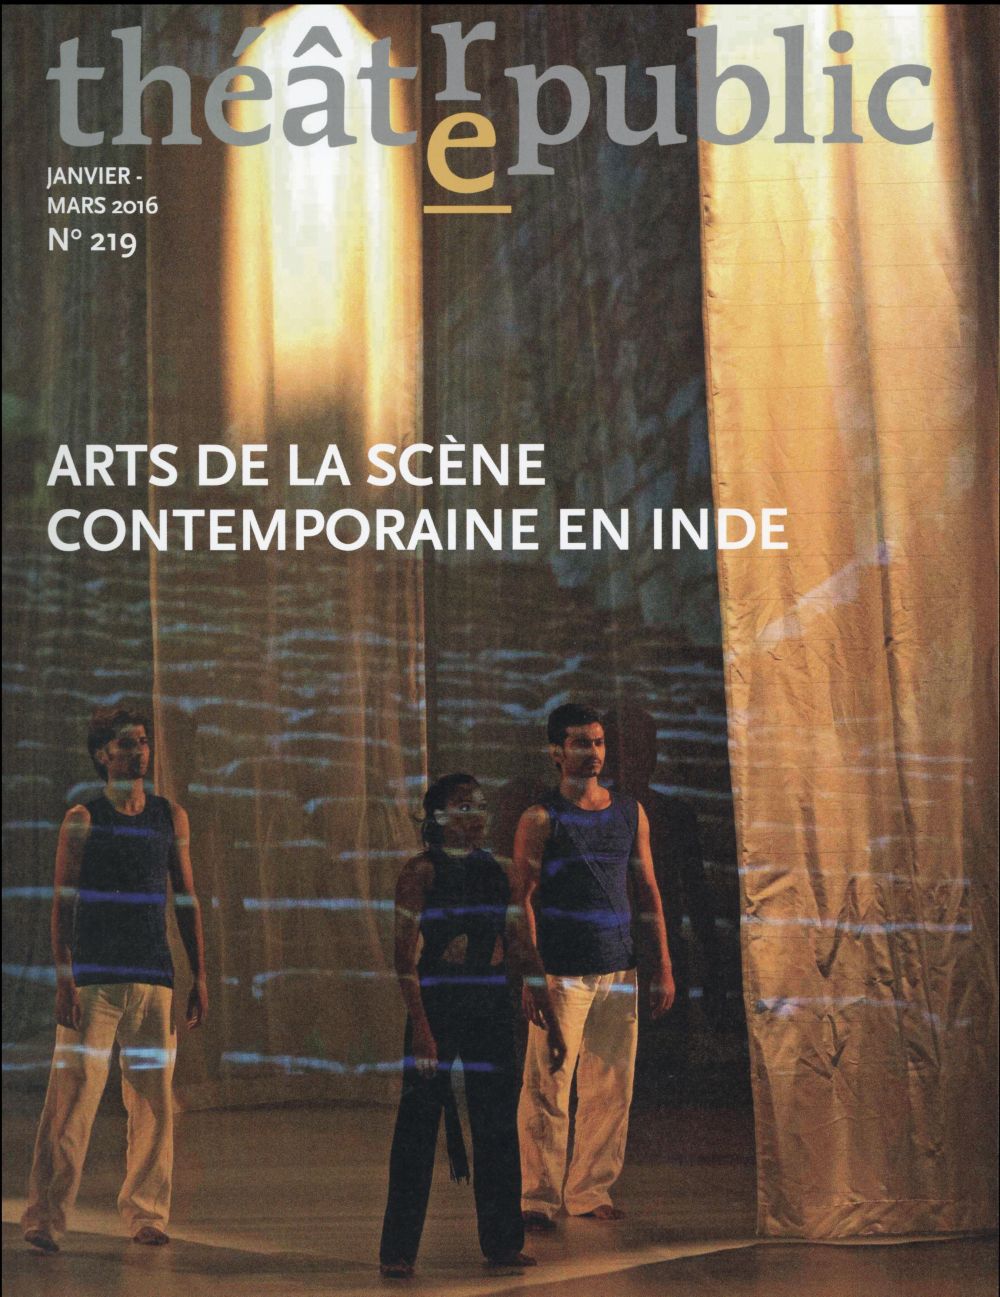 THEATRE PUBLIC N219 - ARTS DE LA SCENE CONTEMPORAINE EN INDE